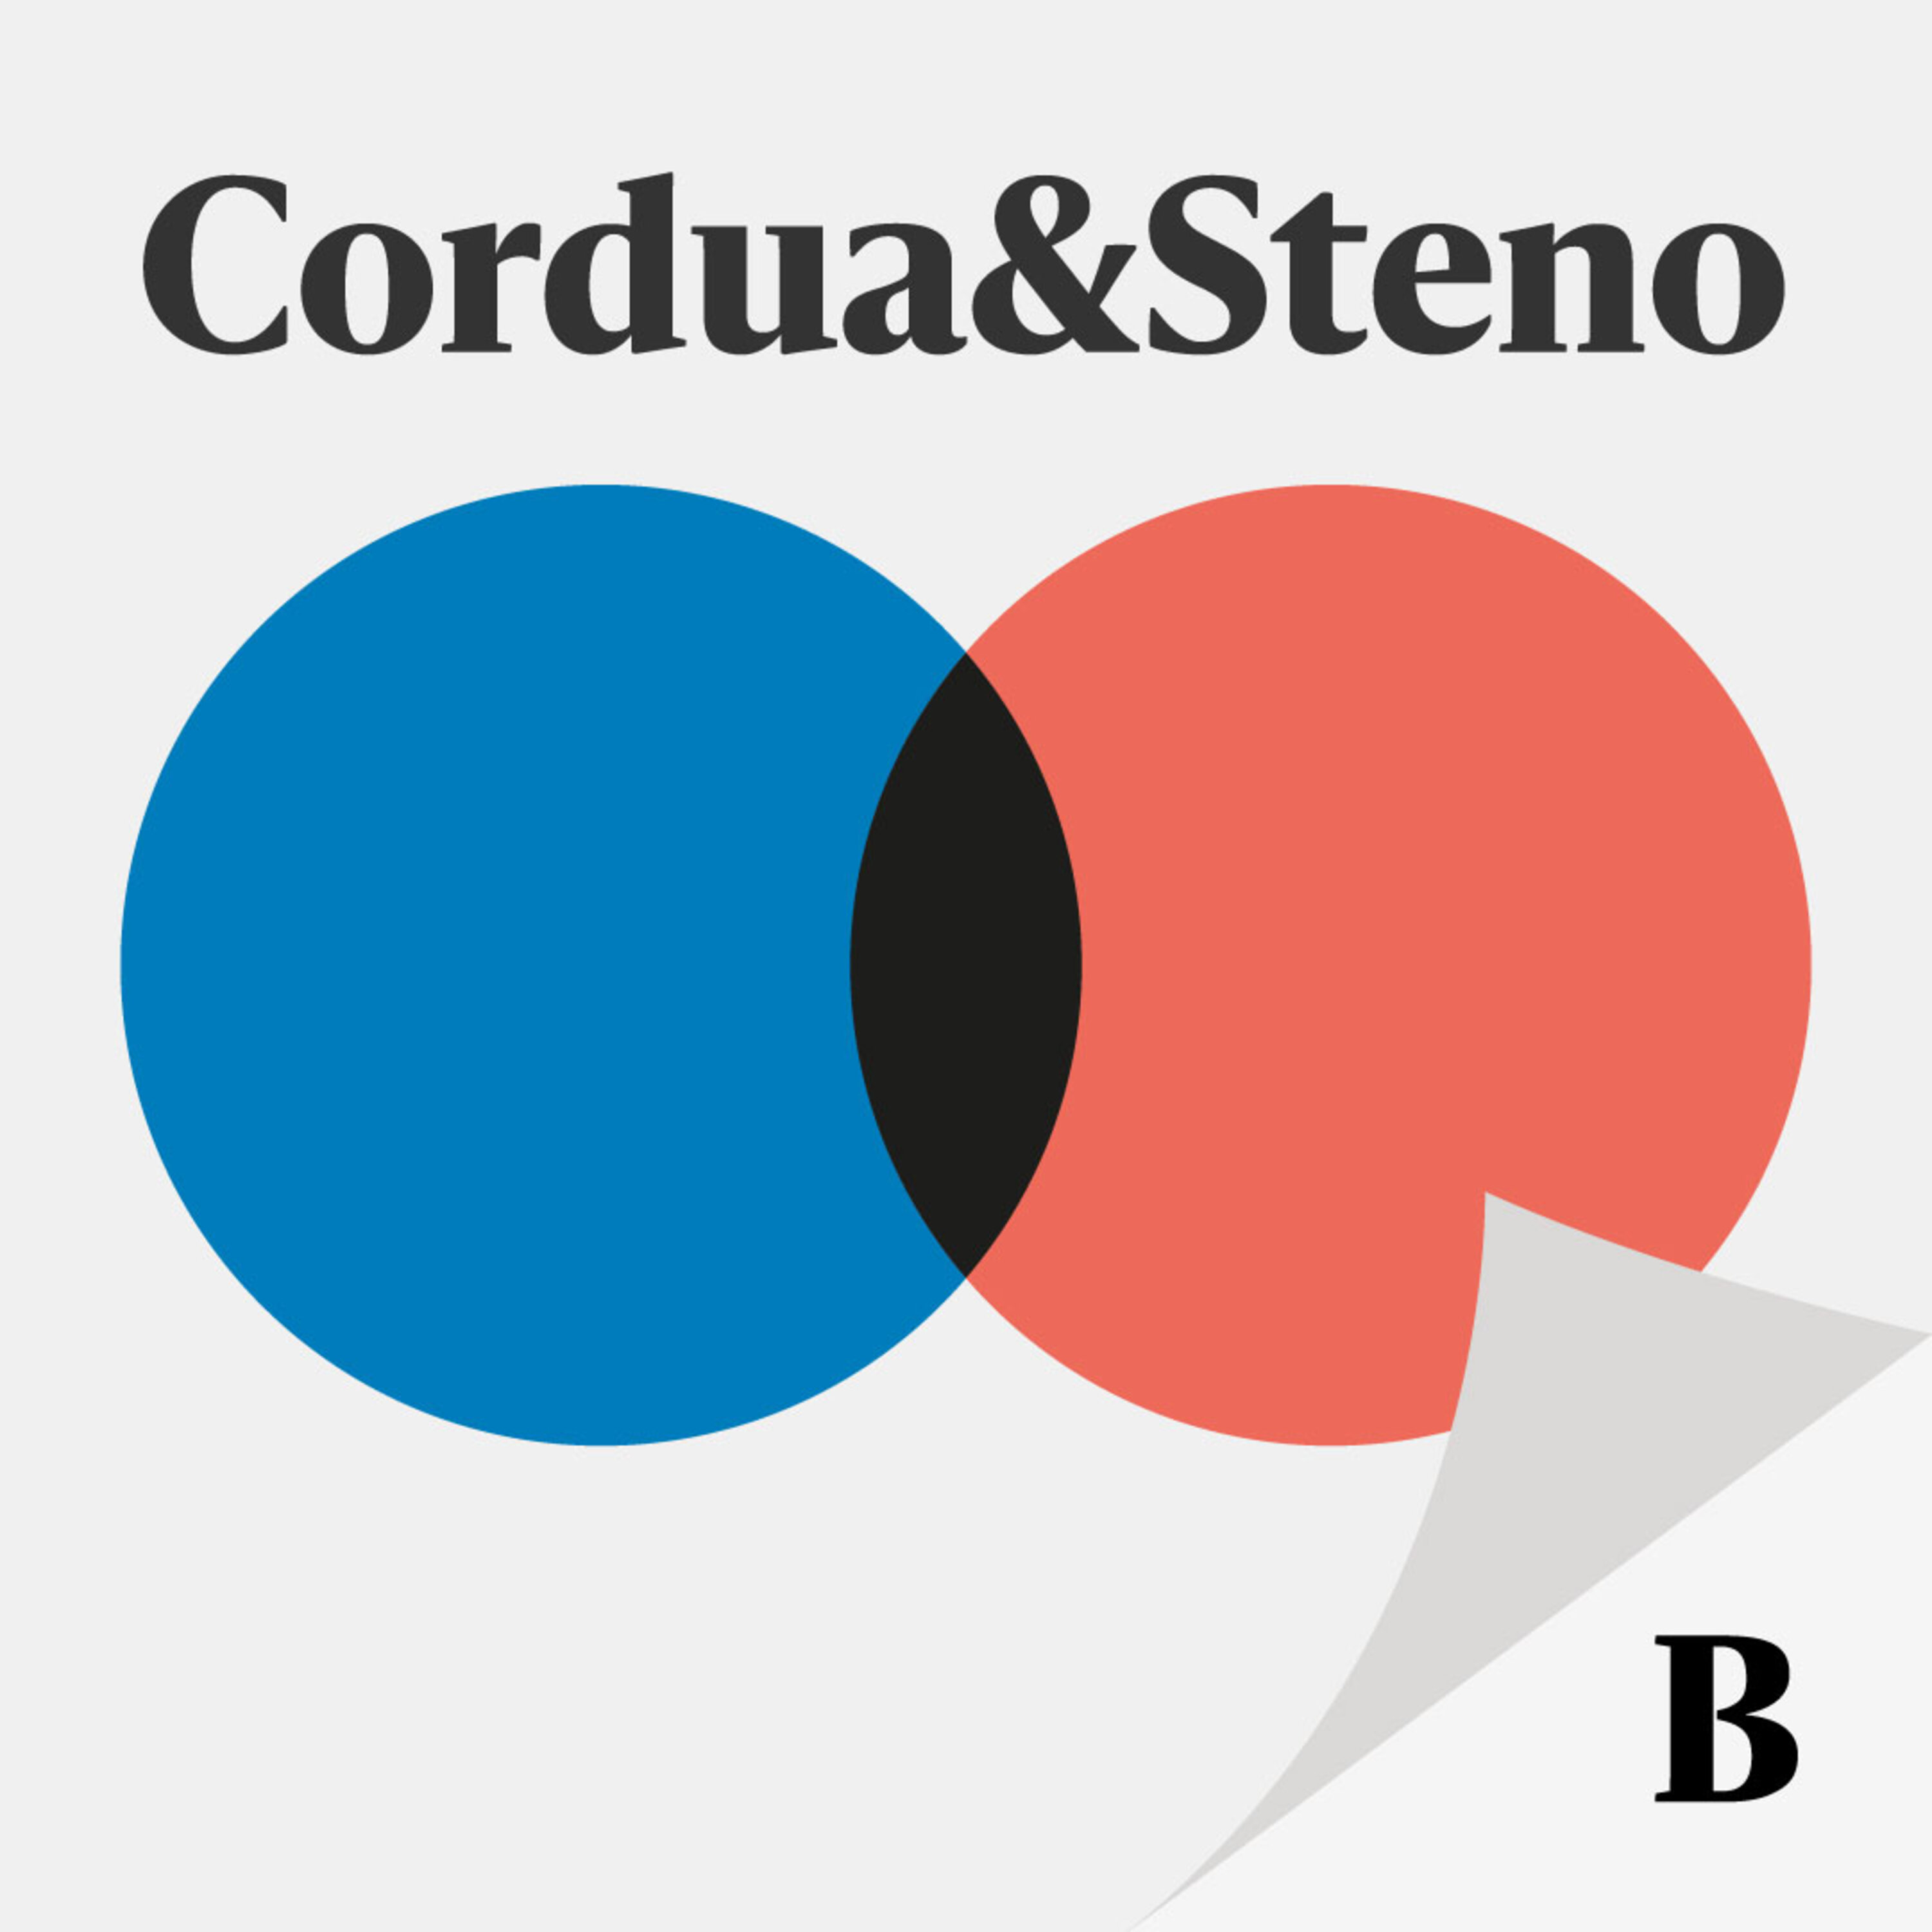 Cordua & Stenos valgspecial:  Hvornår sender Kaare Dybvad afviste asylansøgere til Rwanda?